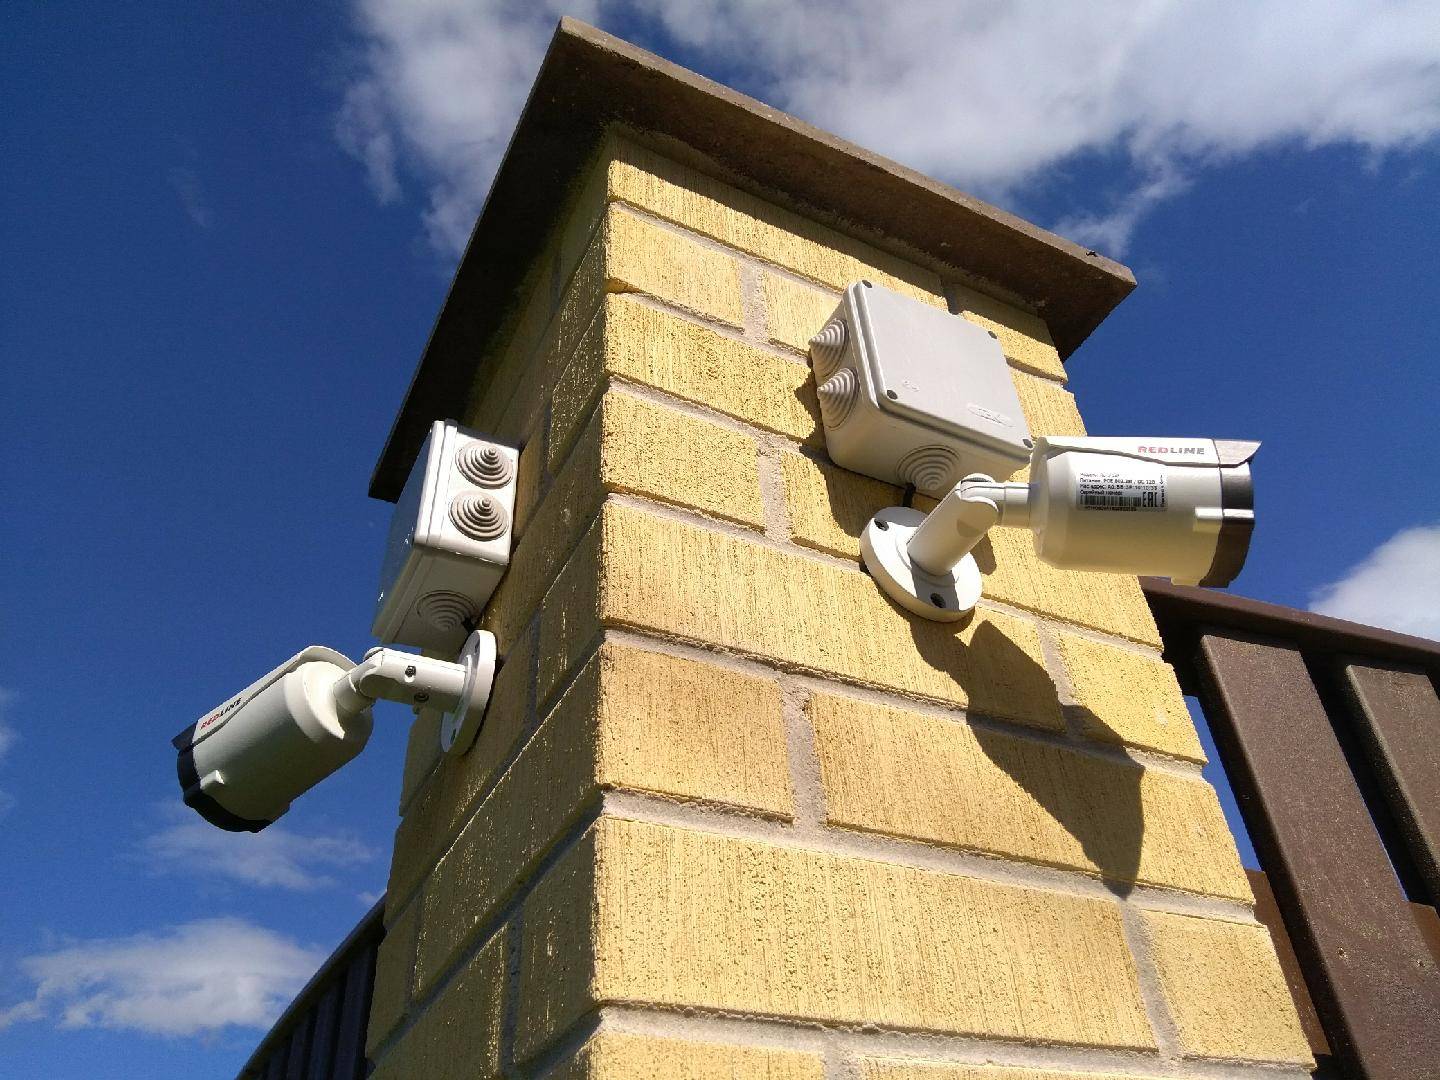 Установка видеонаблюдения в частном доме: камеры и системы